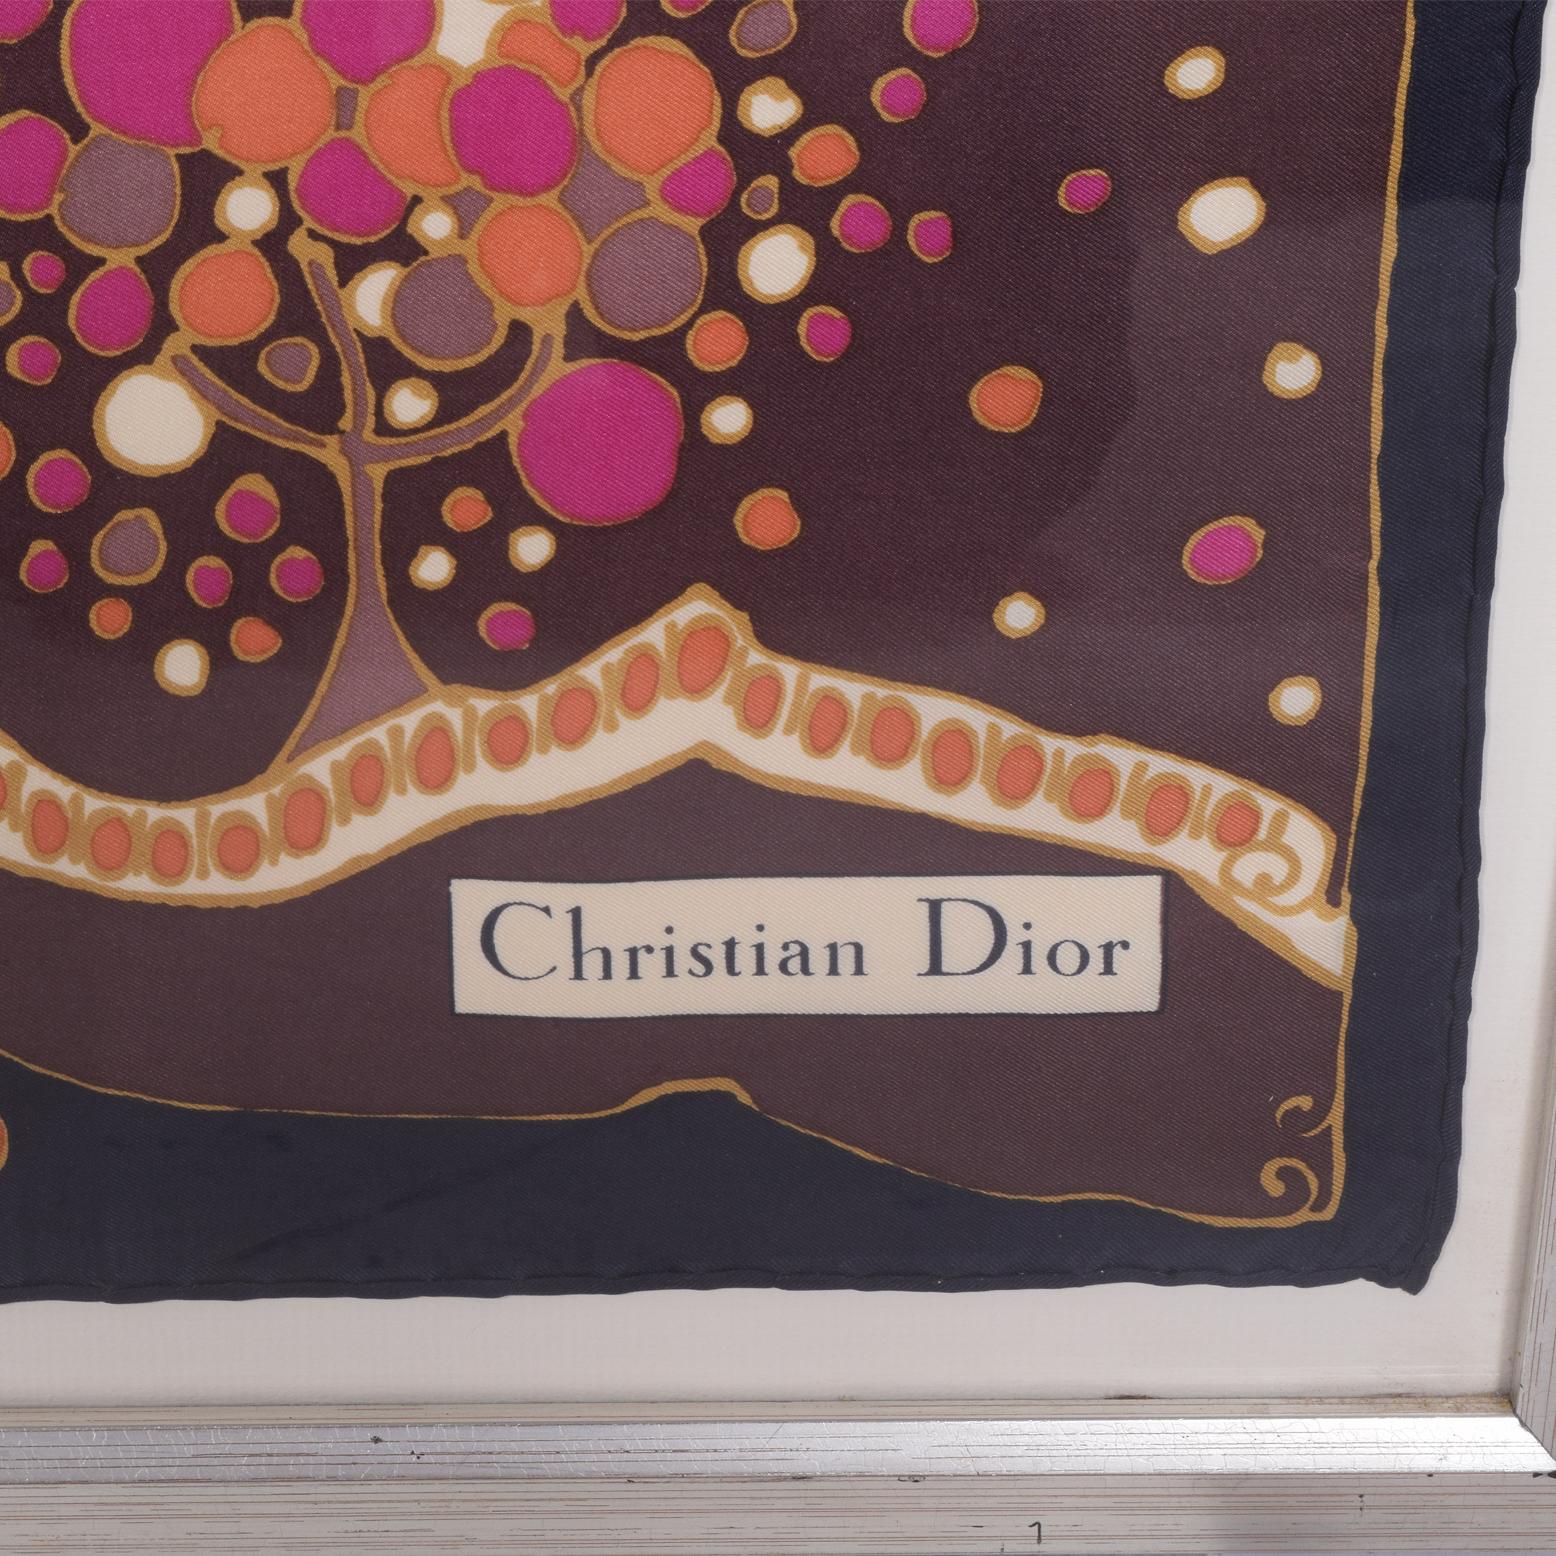 Cristian Dior silk scarf framed.